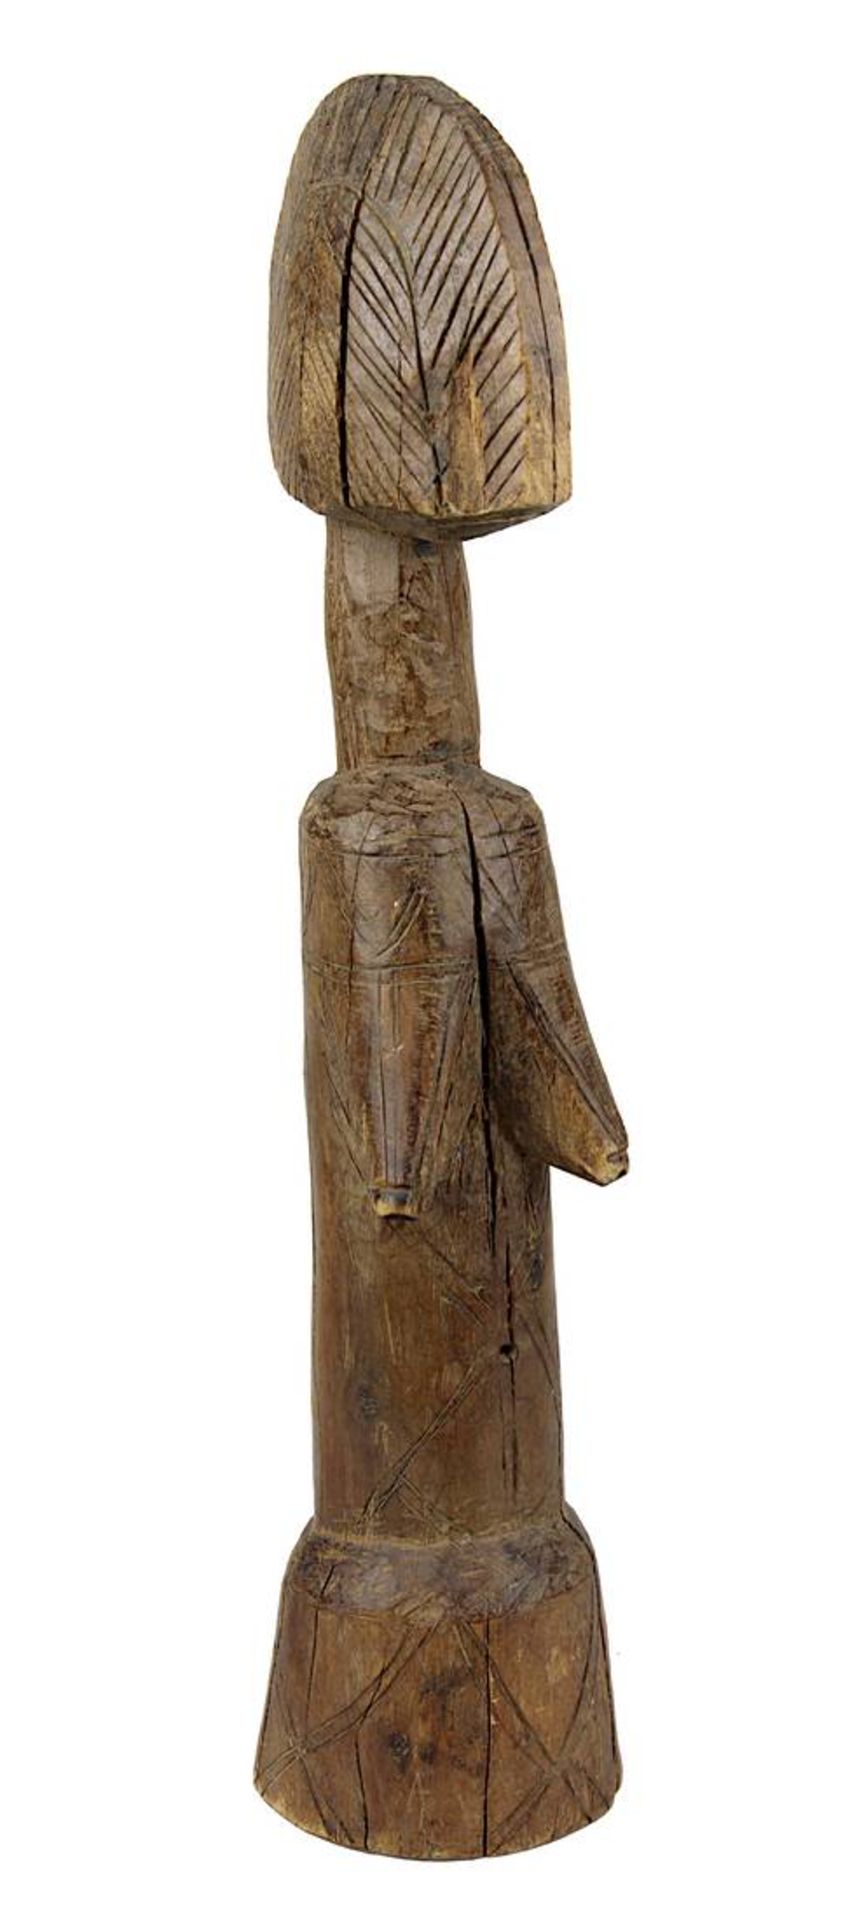 Puppe der Mossi, Burkina Faso, schweres Holz geschnitzt und mit Ritzornamentik verziert, schimmernde